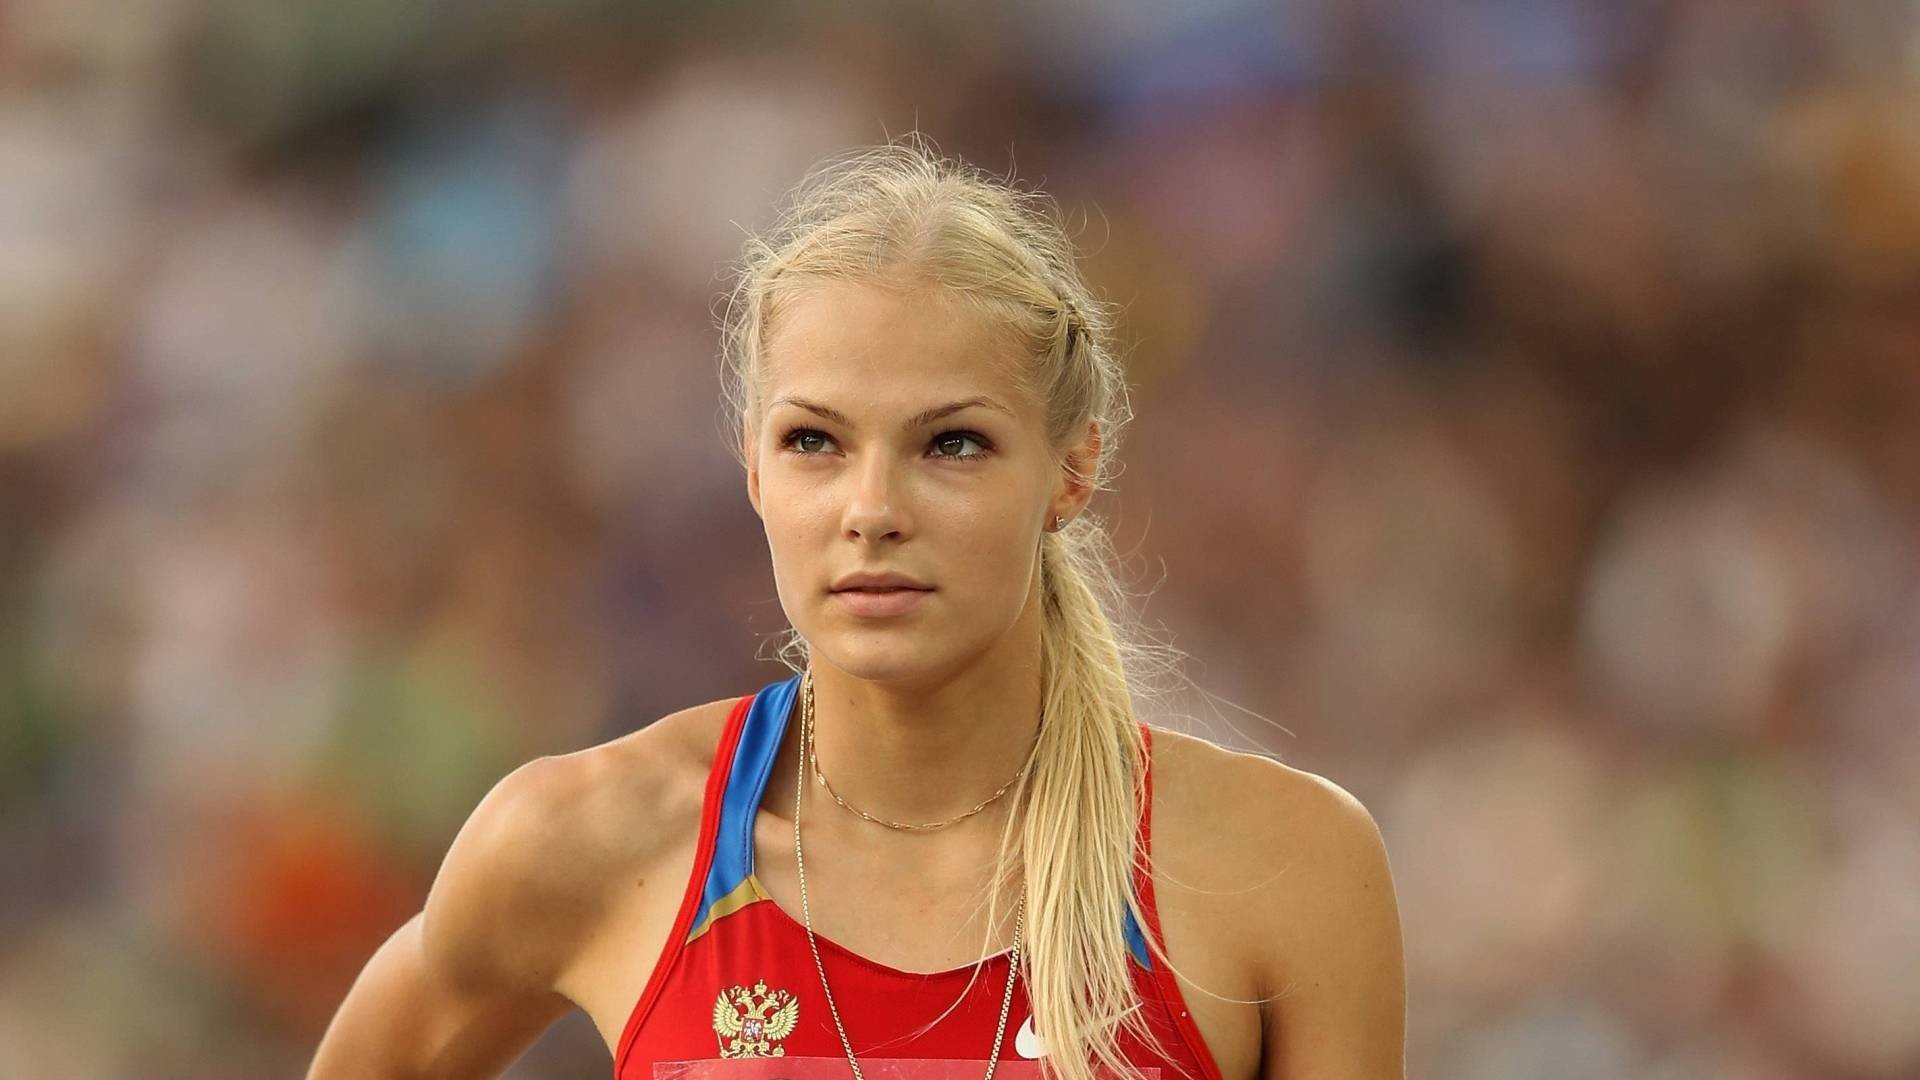 Darya Klishina, Women, Blonde, Athletes, Sport Wallpaper